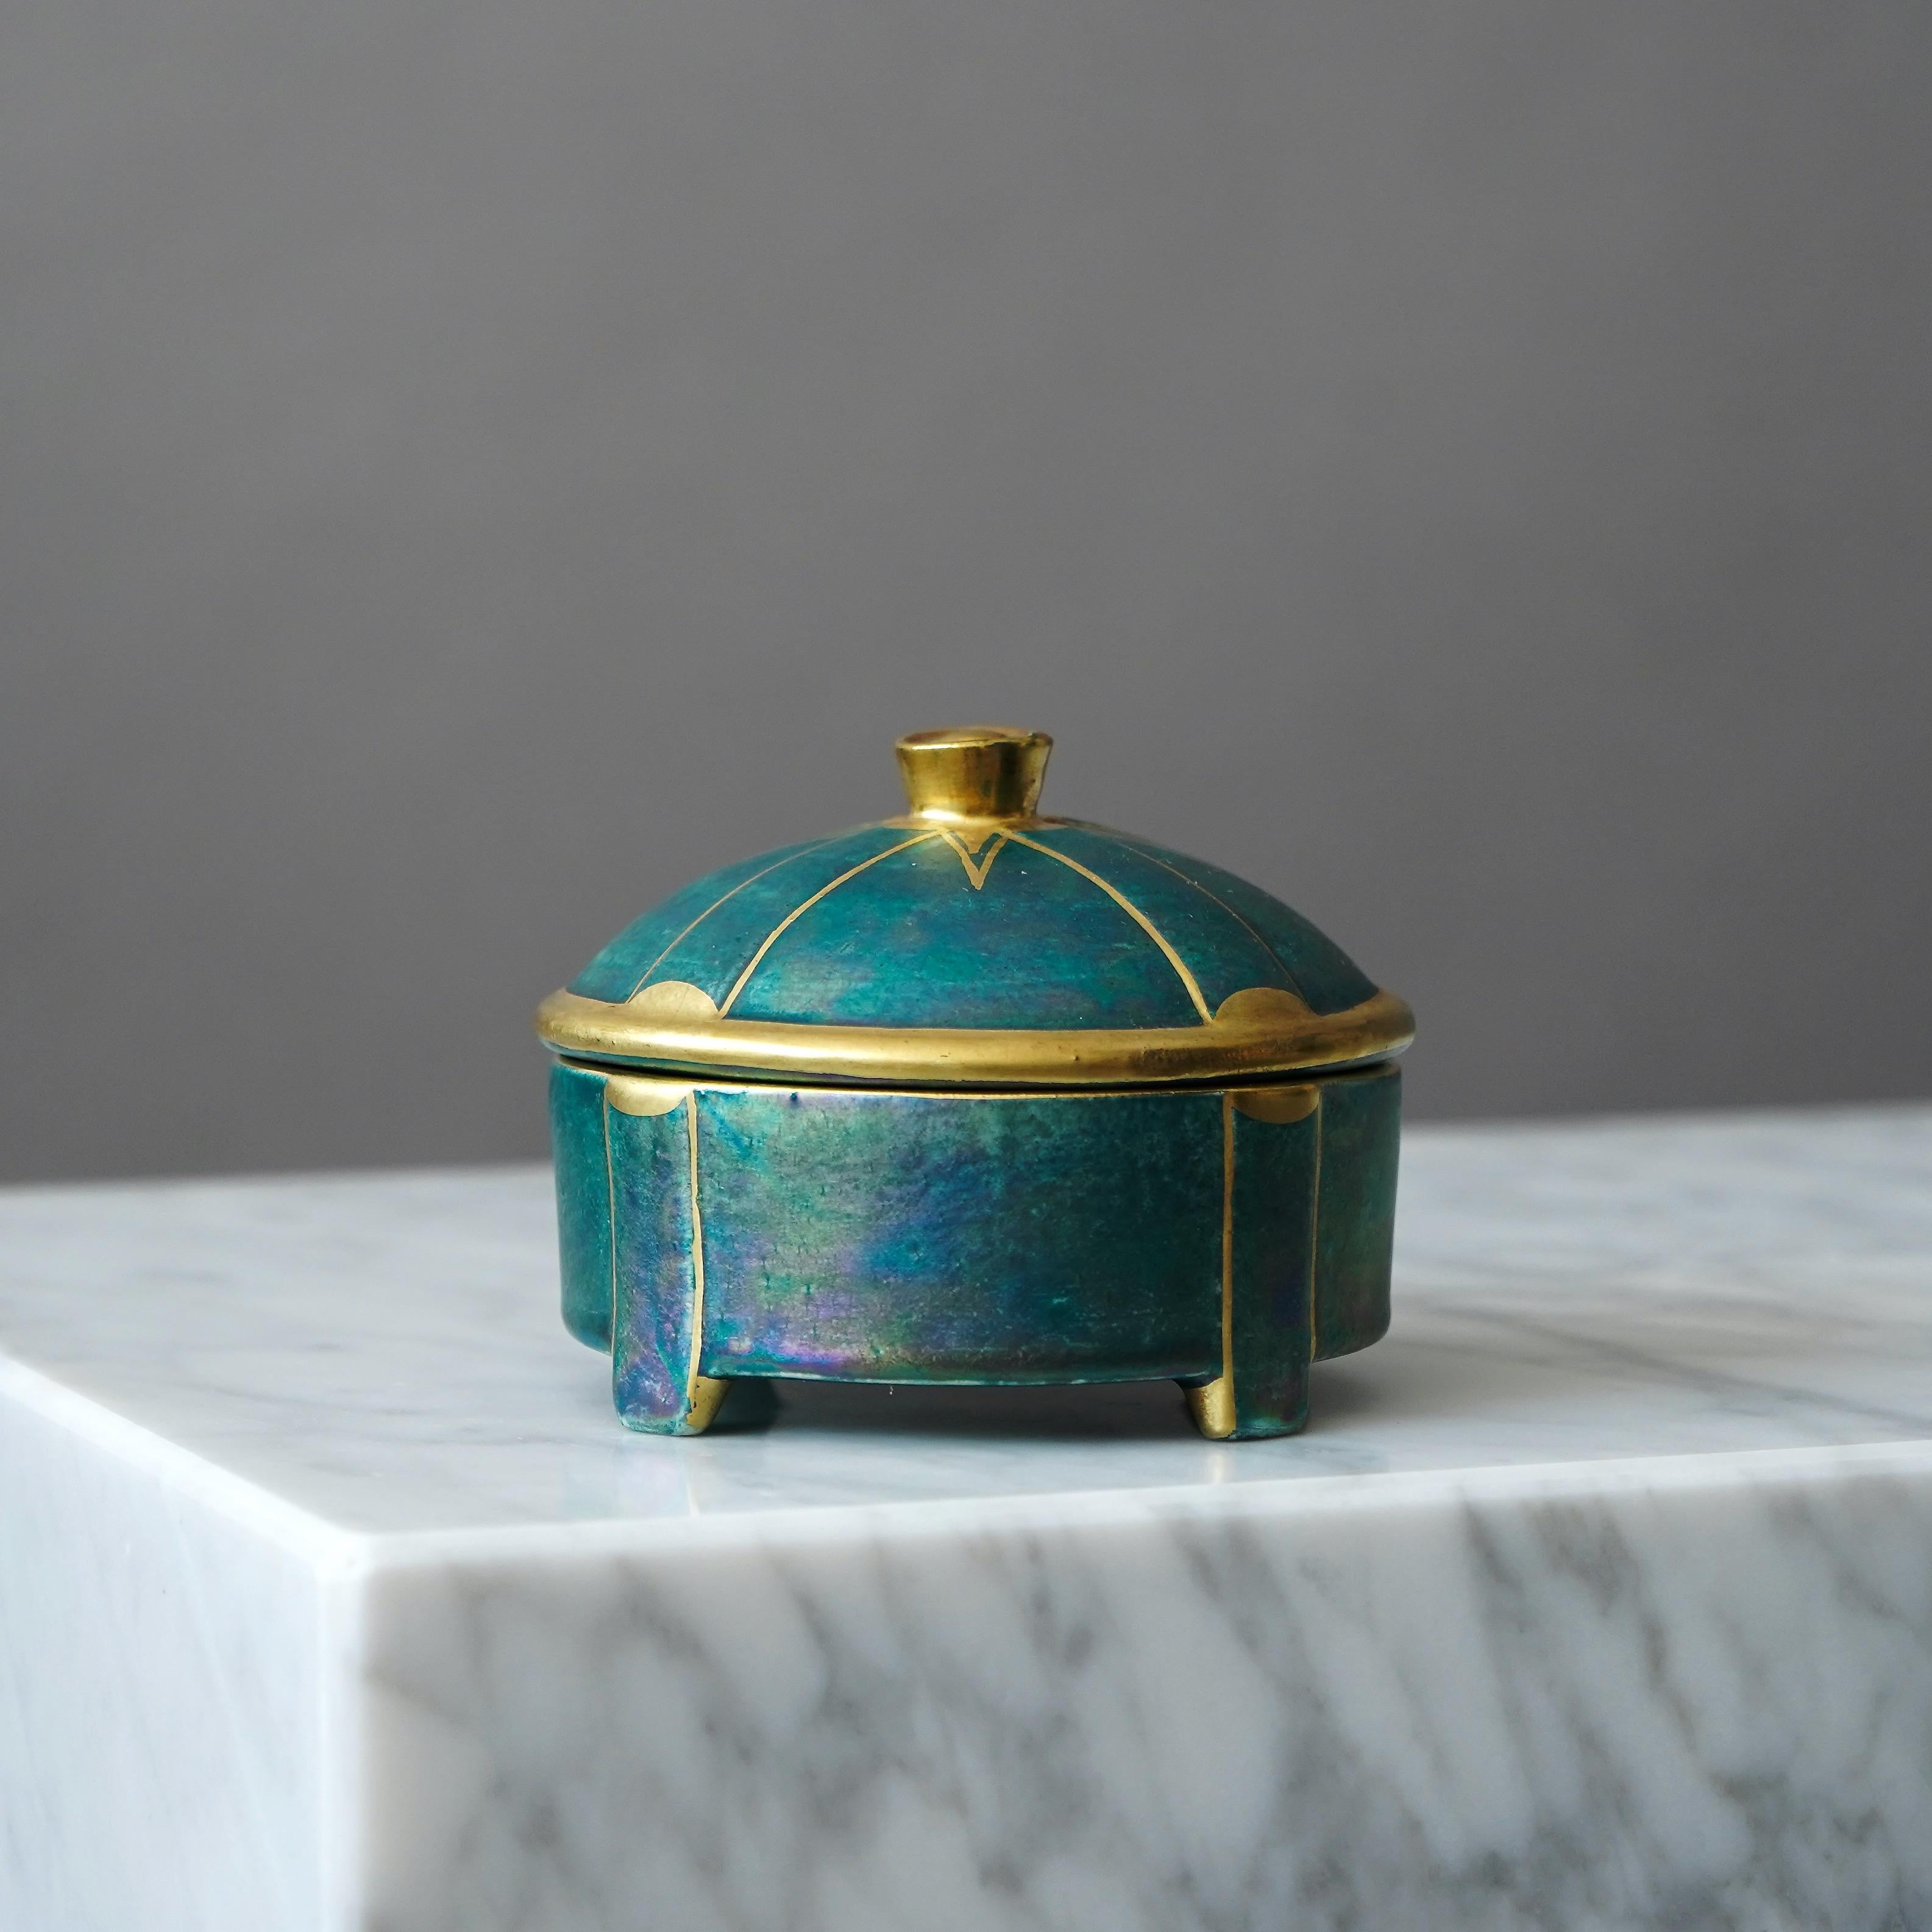 20th Century Small Art Deco Lustre Lidded Bowl by Josef Ekberg for Gustavsberg, Sweden, 1930s For Sale